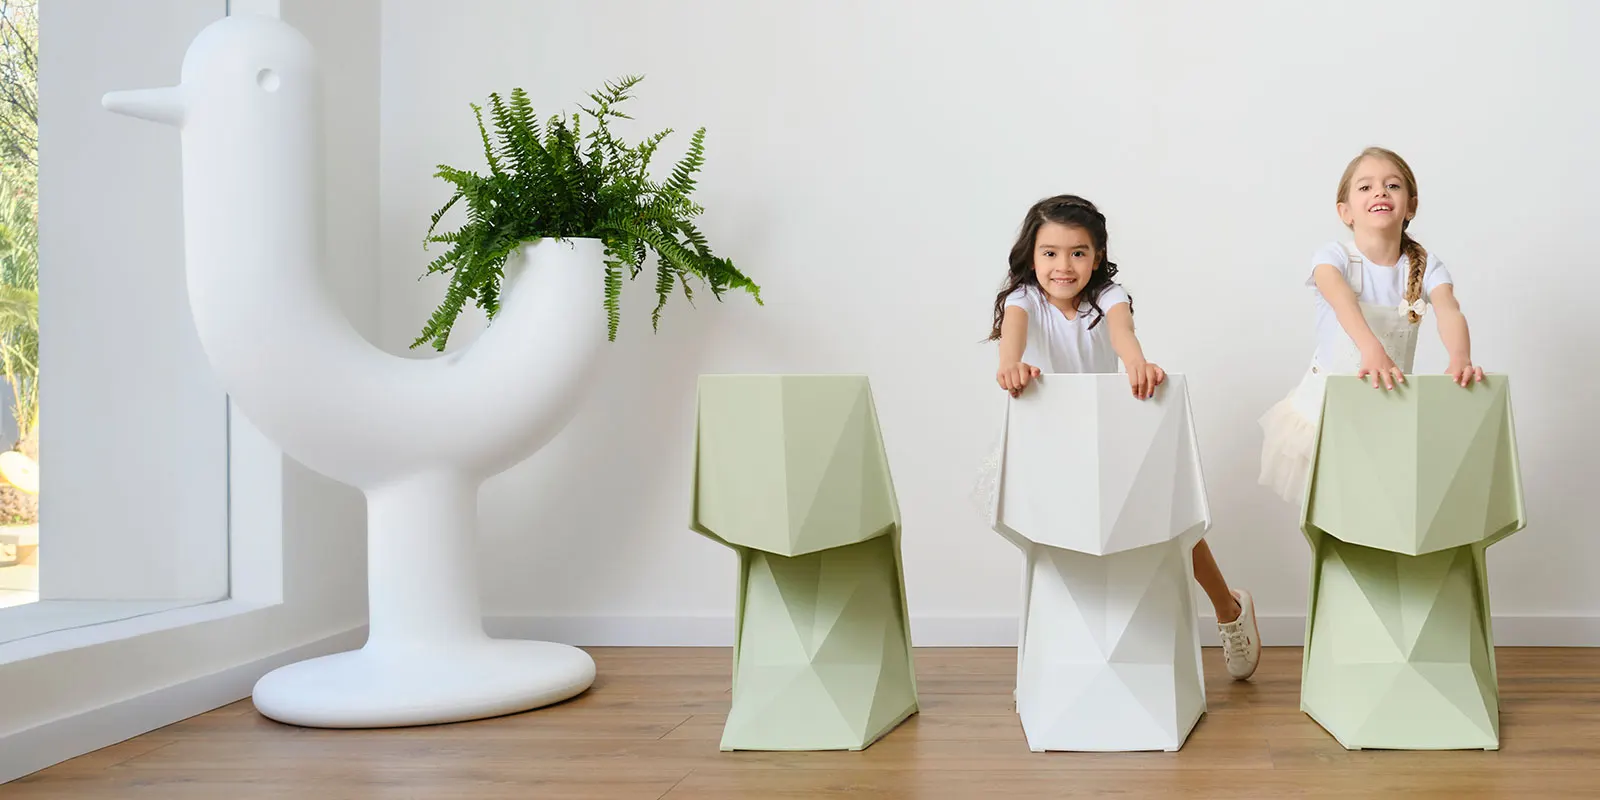 chaises-mobilier-enfants-contract-design-voxel-karim-rashid-vondom (8) copie